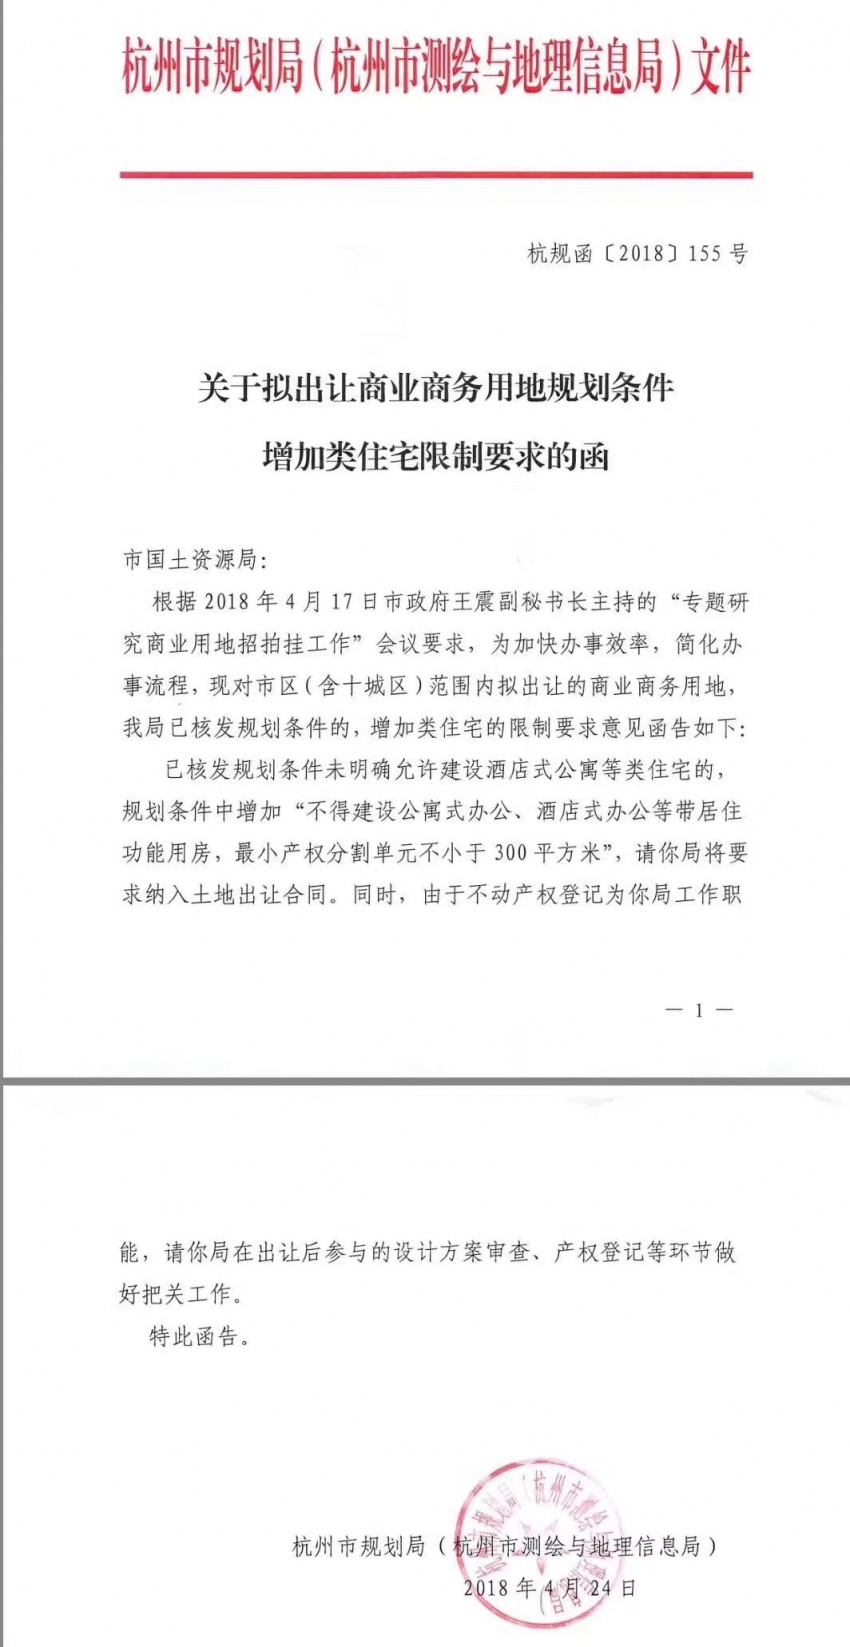 杭州重发限酒令:商业项目最小产权不小于30